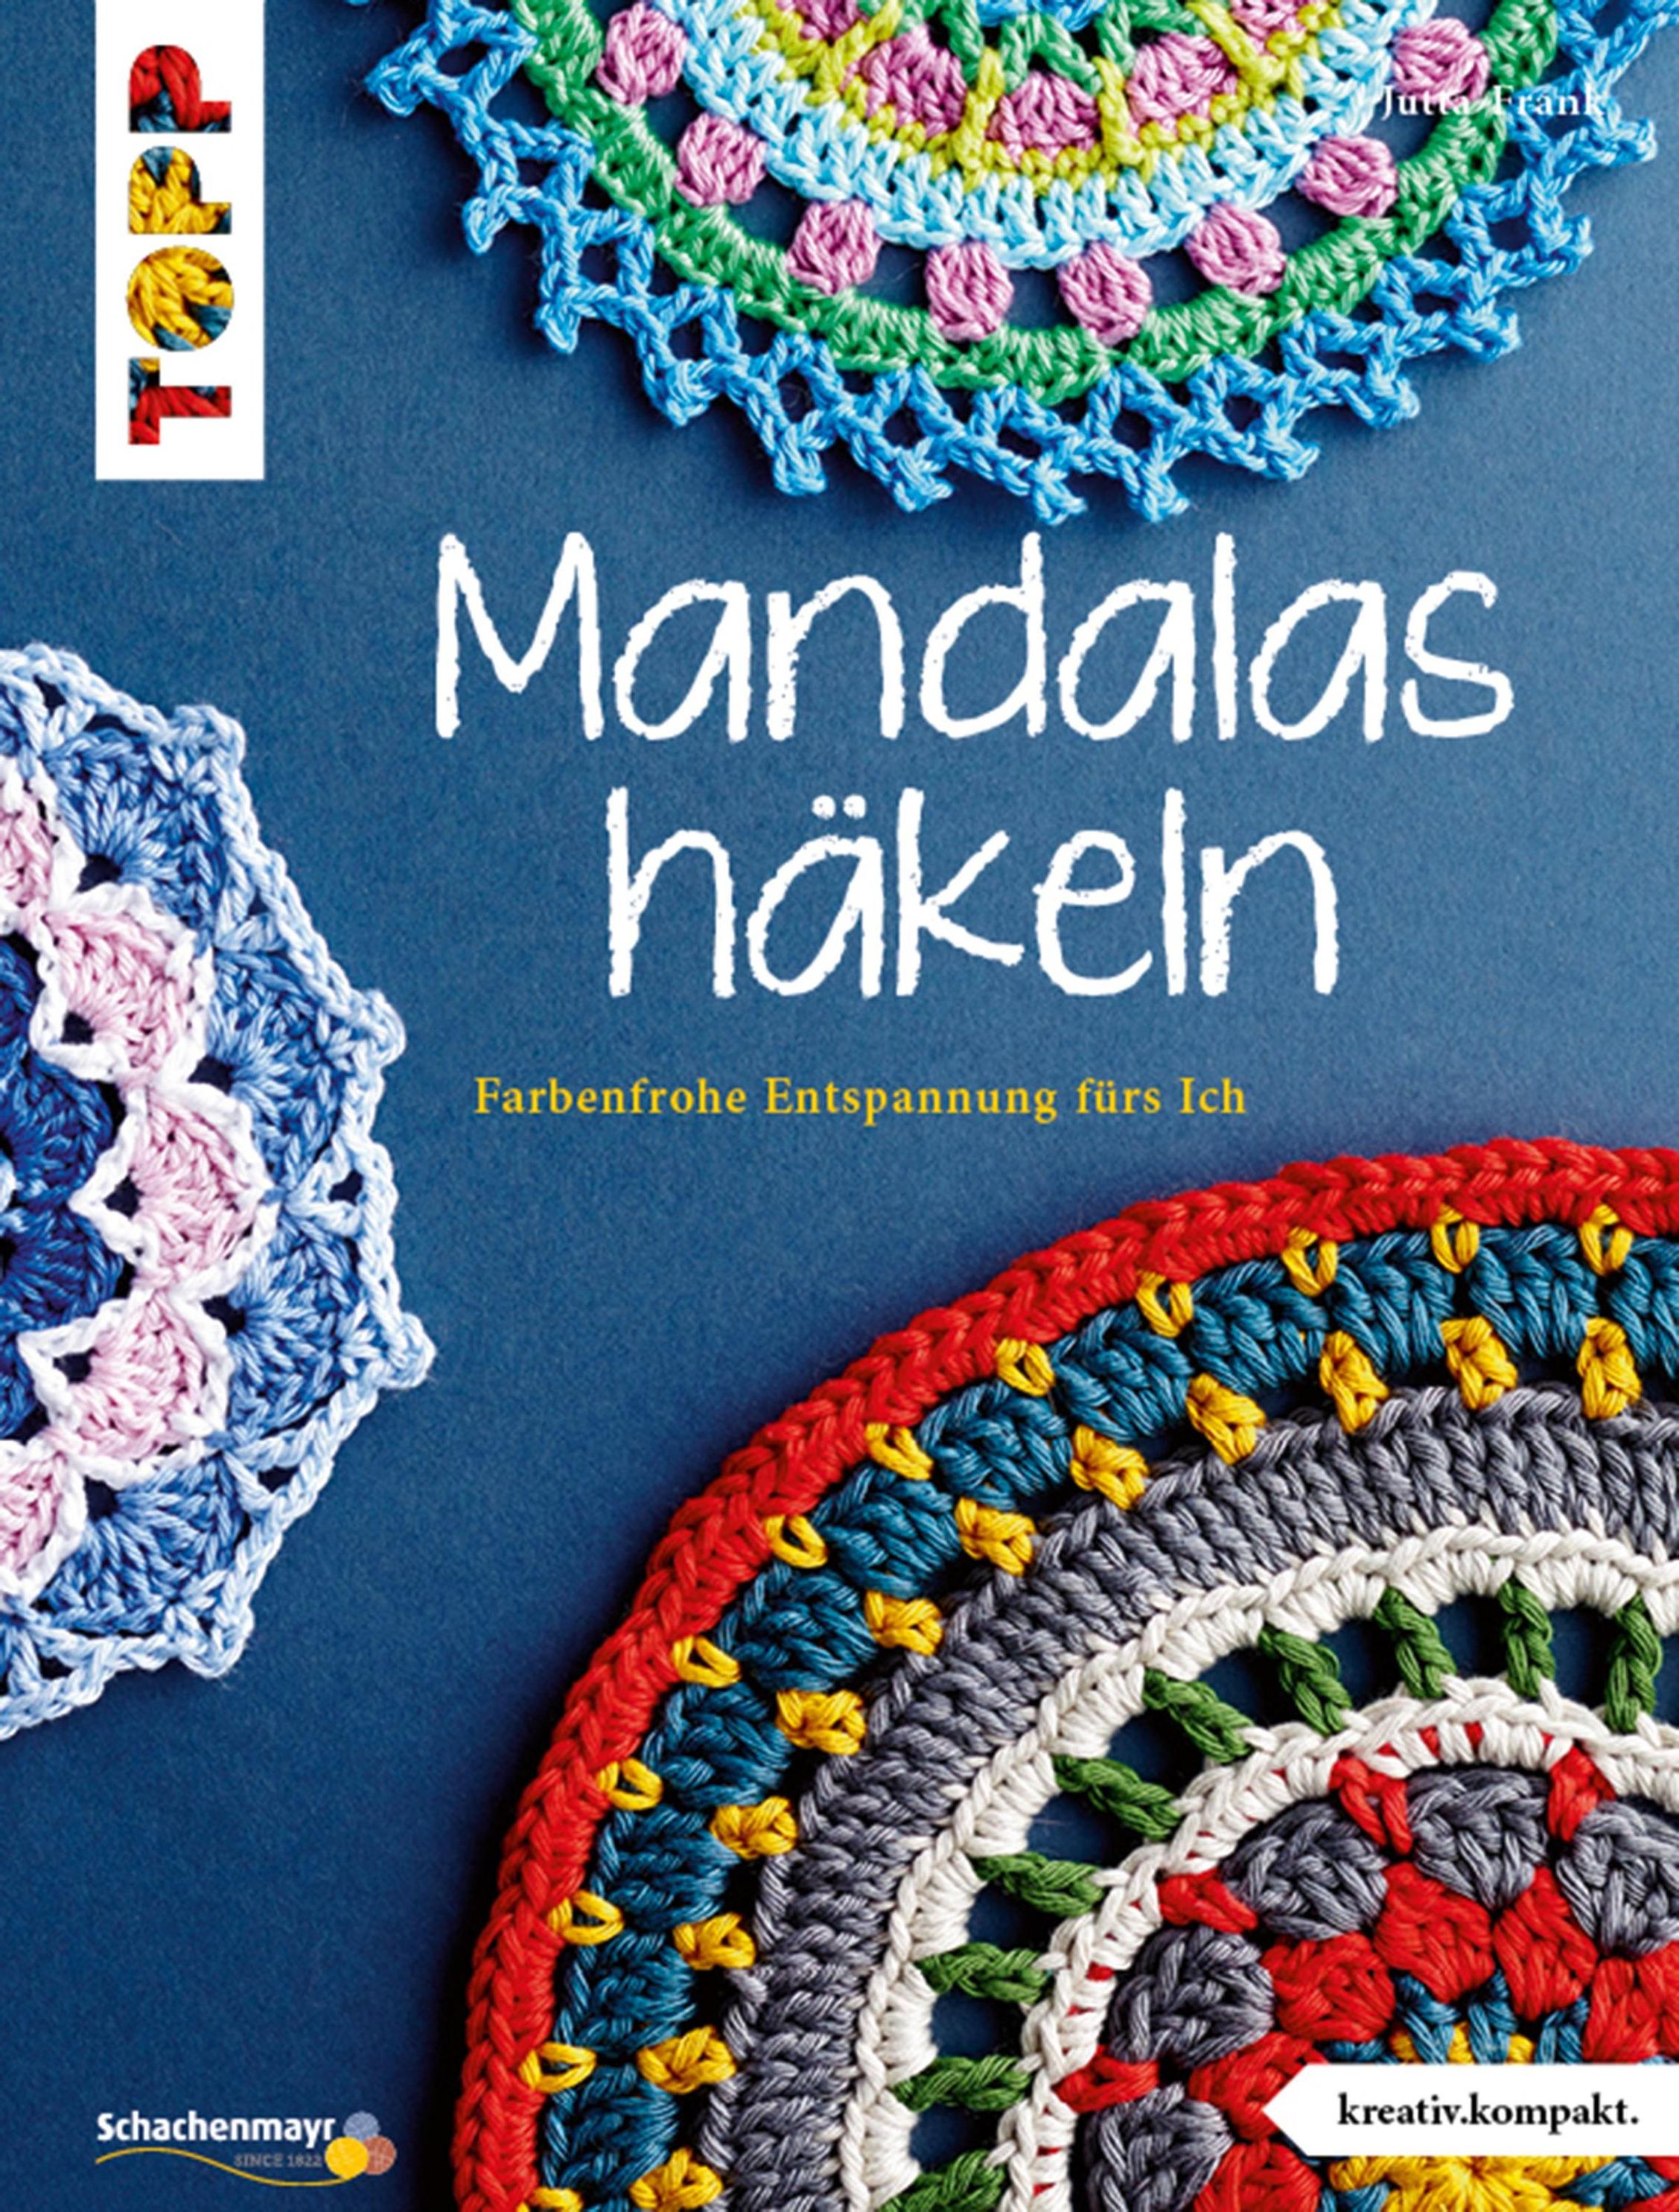 Mandalas häkeln kreativ.lompakt eBook v. Jutta Frank | Weltbild